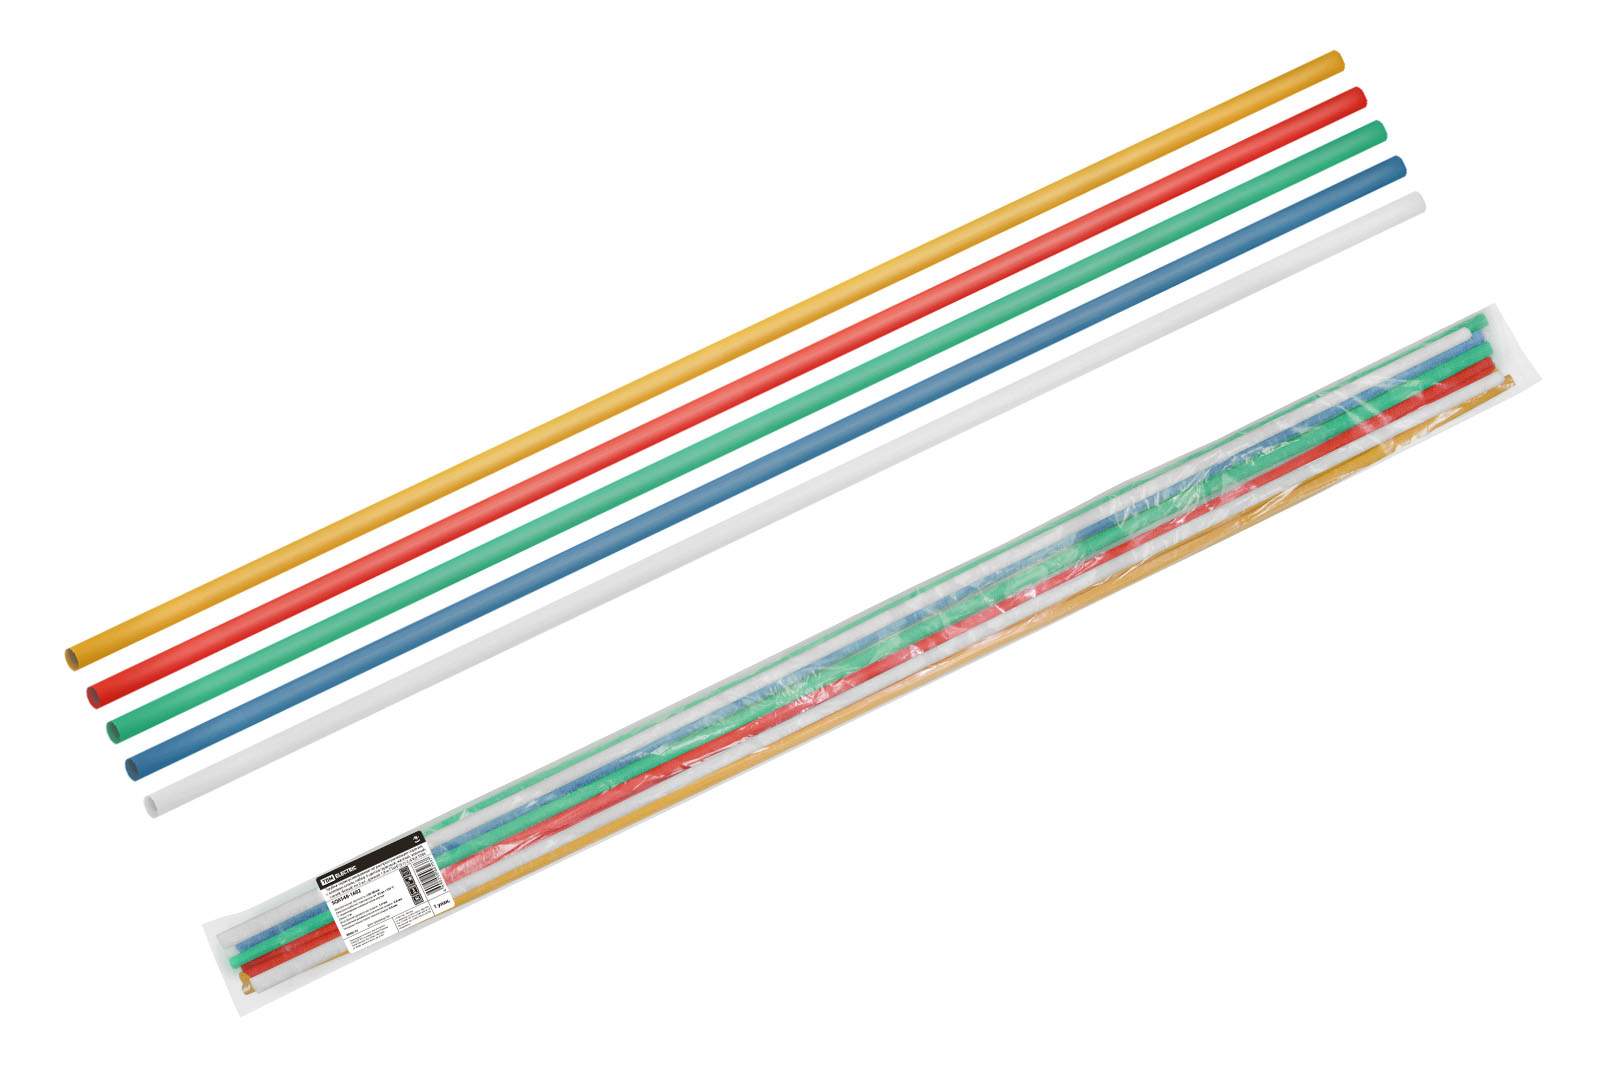 трубки термоусаживаемые, клеевые, набор 5 цветов по 2 шт. тткнг(3:1)-2,4/0,8 tdm от BTSprom.by